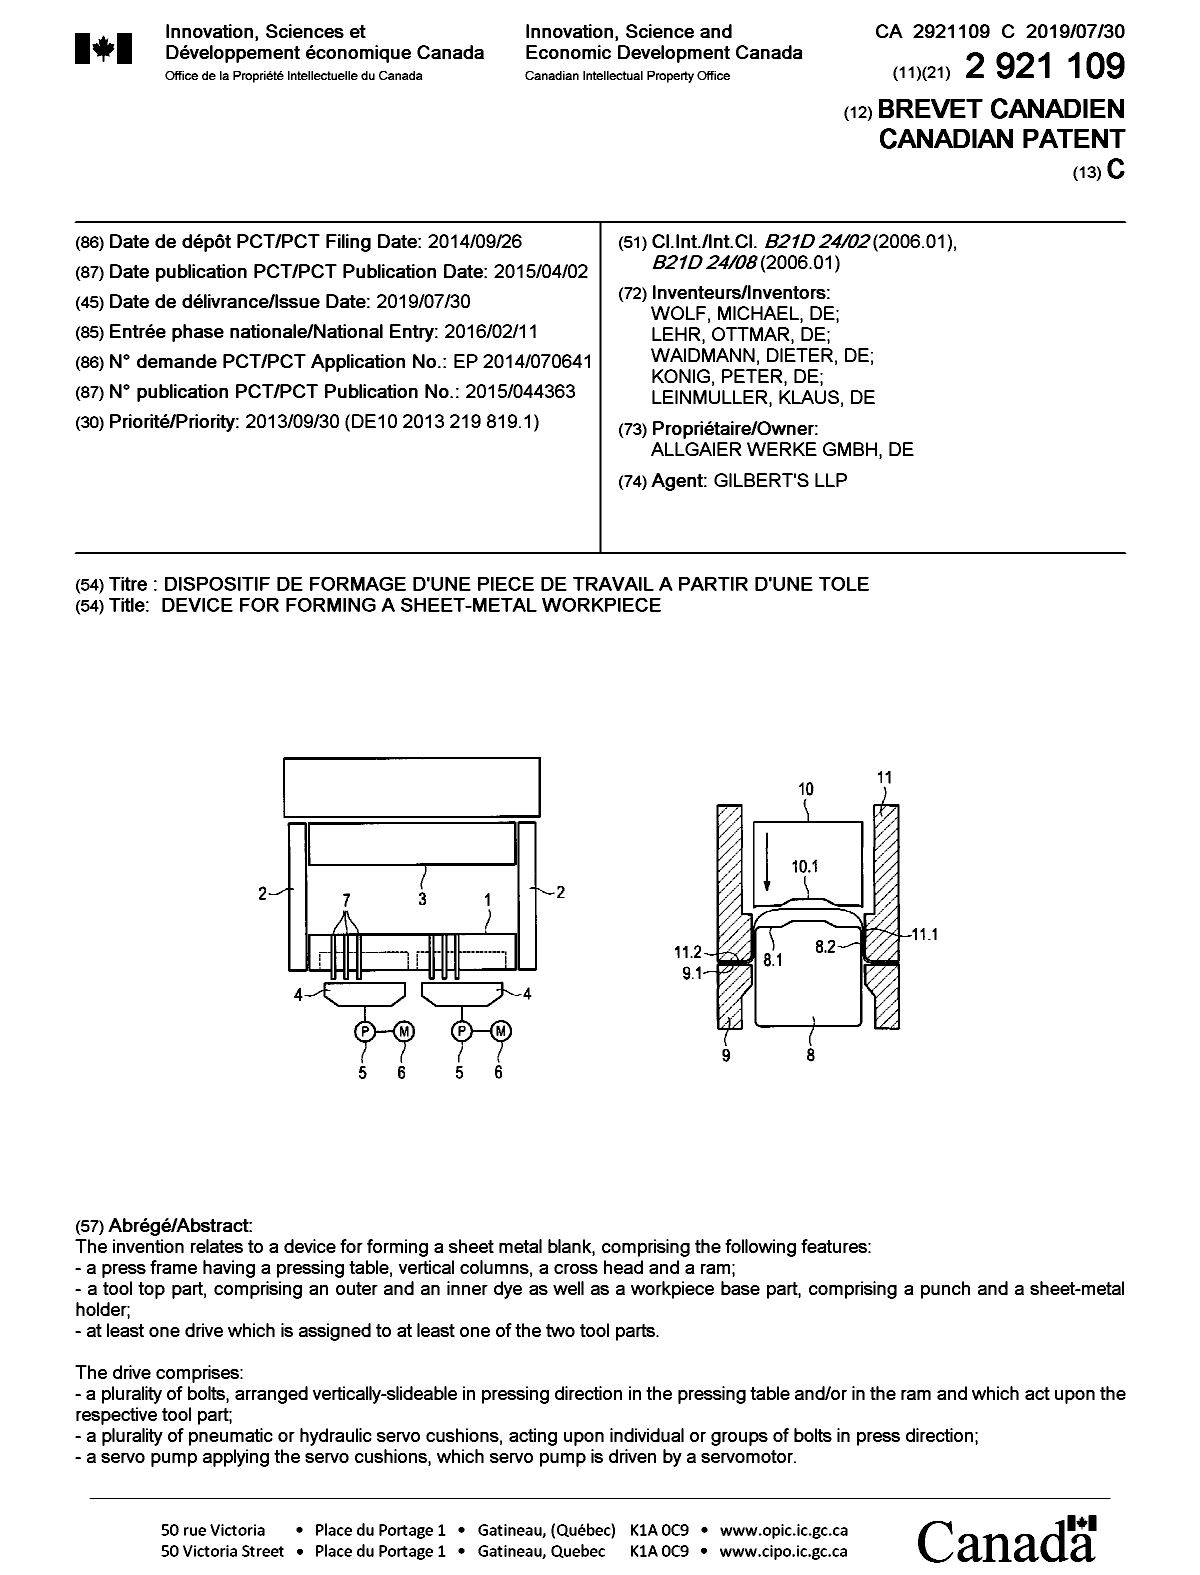 Document de brevet canadien 2921109. Page couverture 20190703. Image 1 de 1